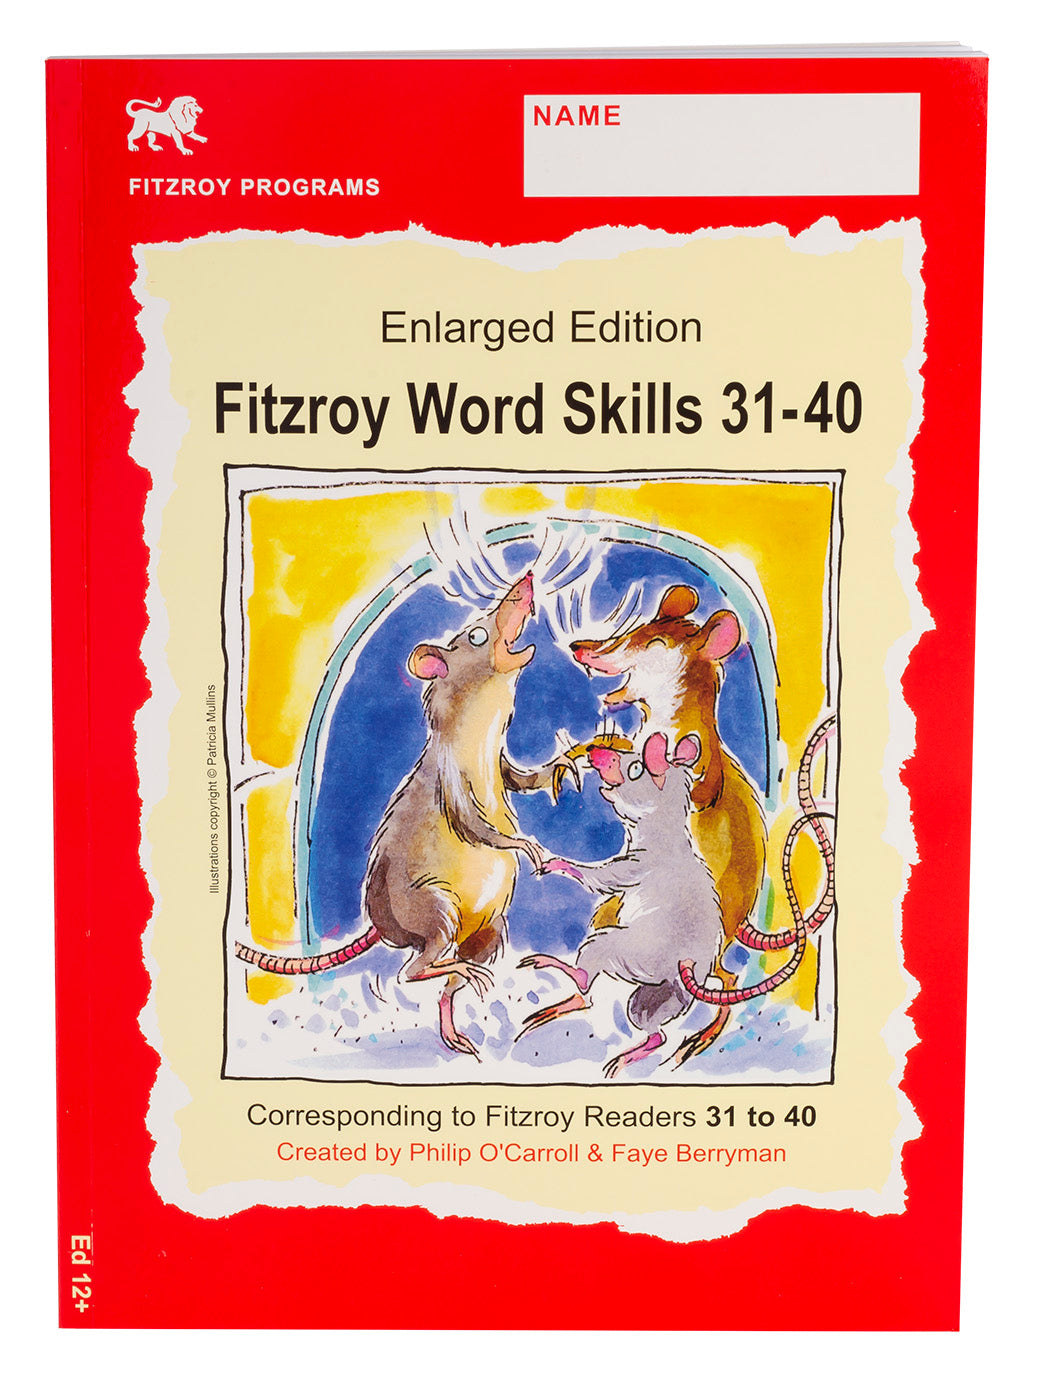 Fitzroy Word Skills 31-40